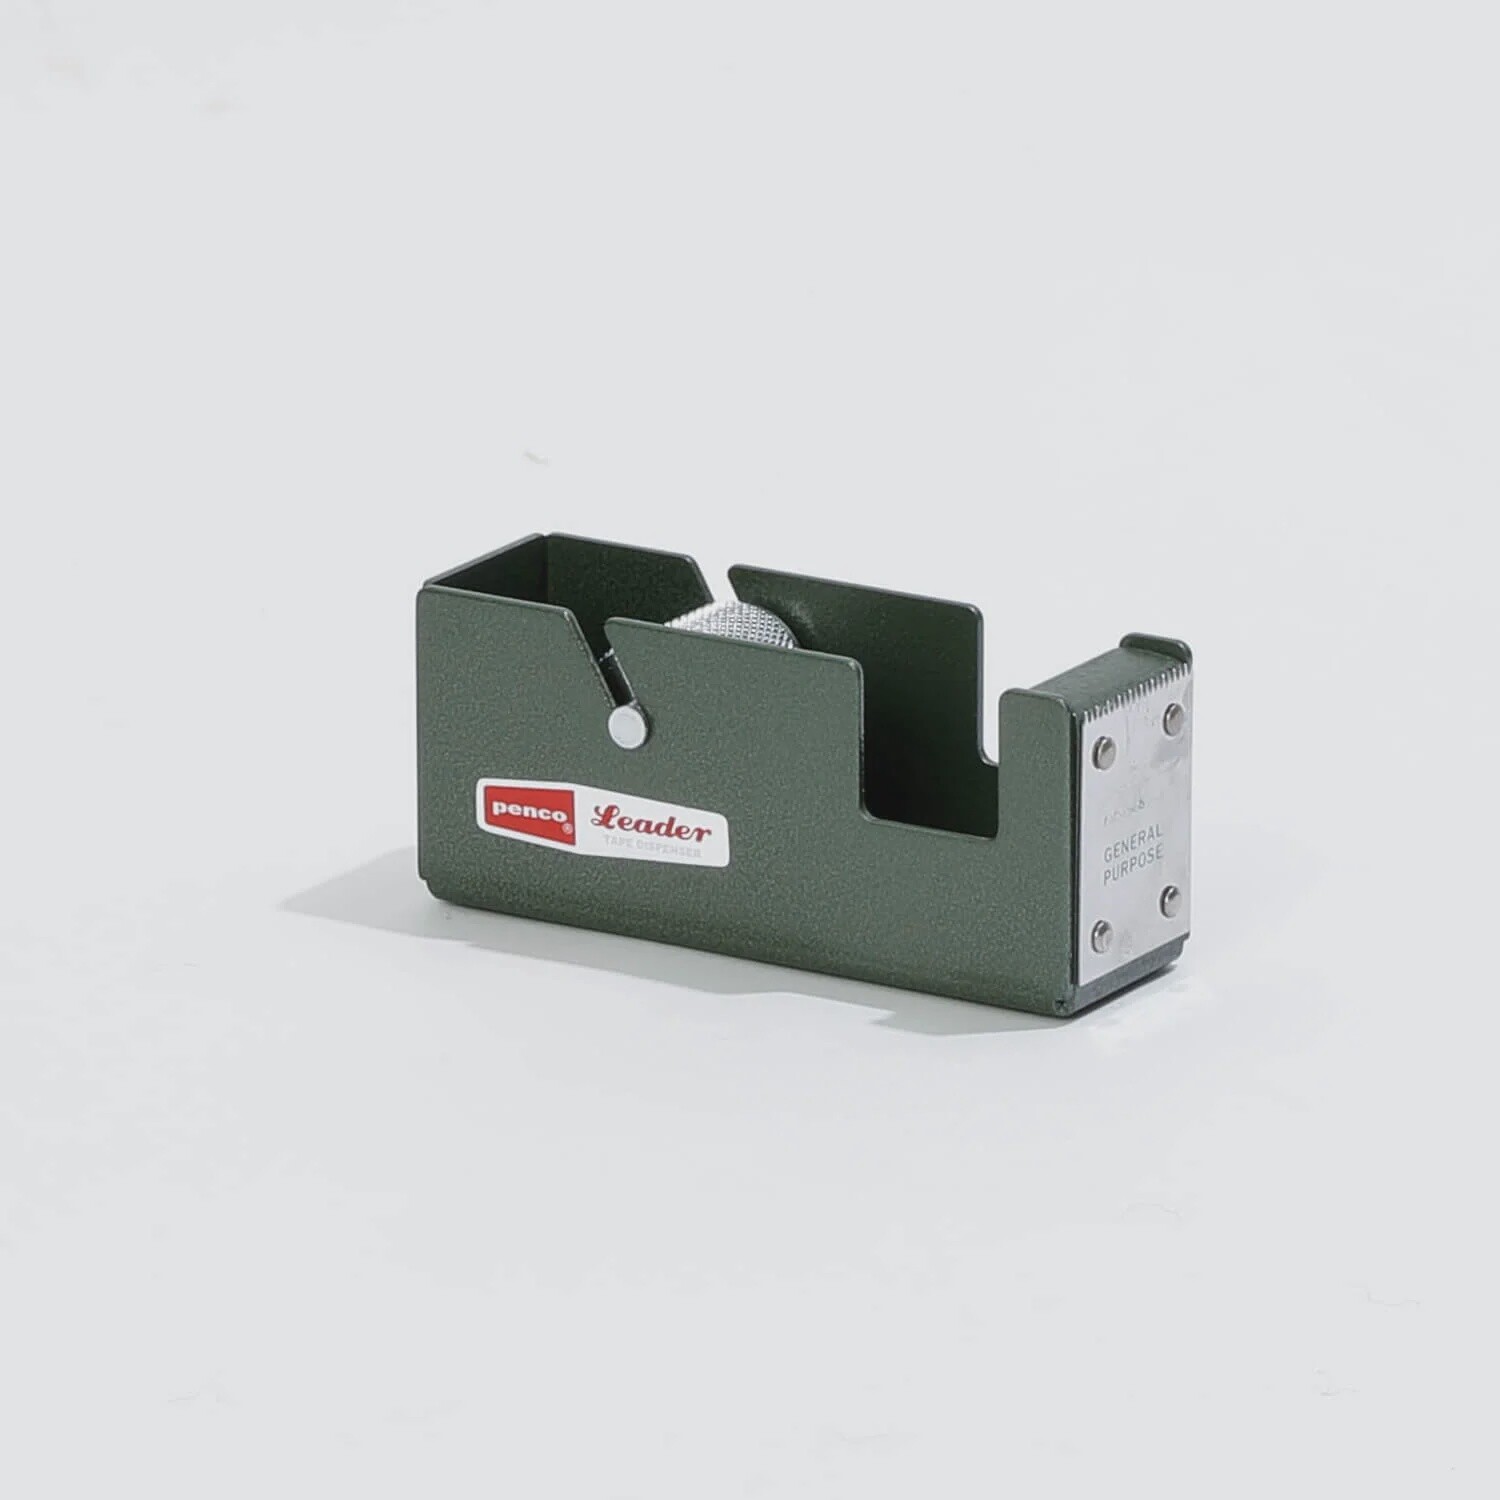 PENCO tape dispenser green small